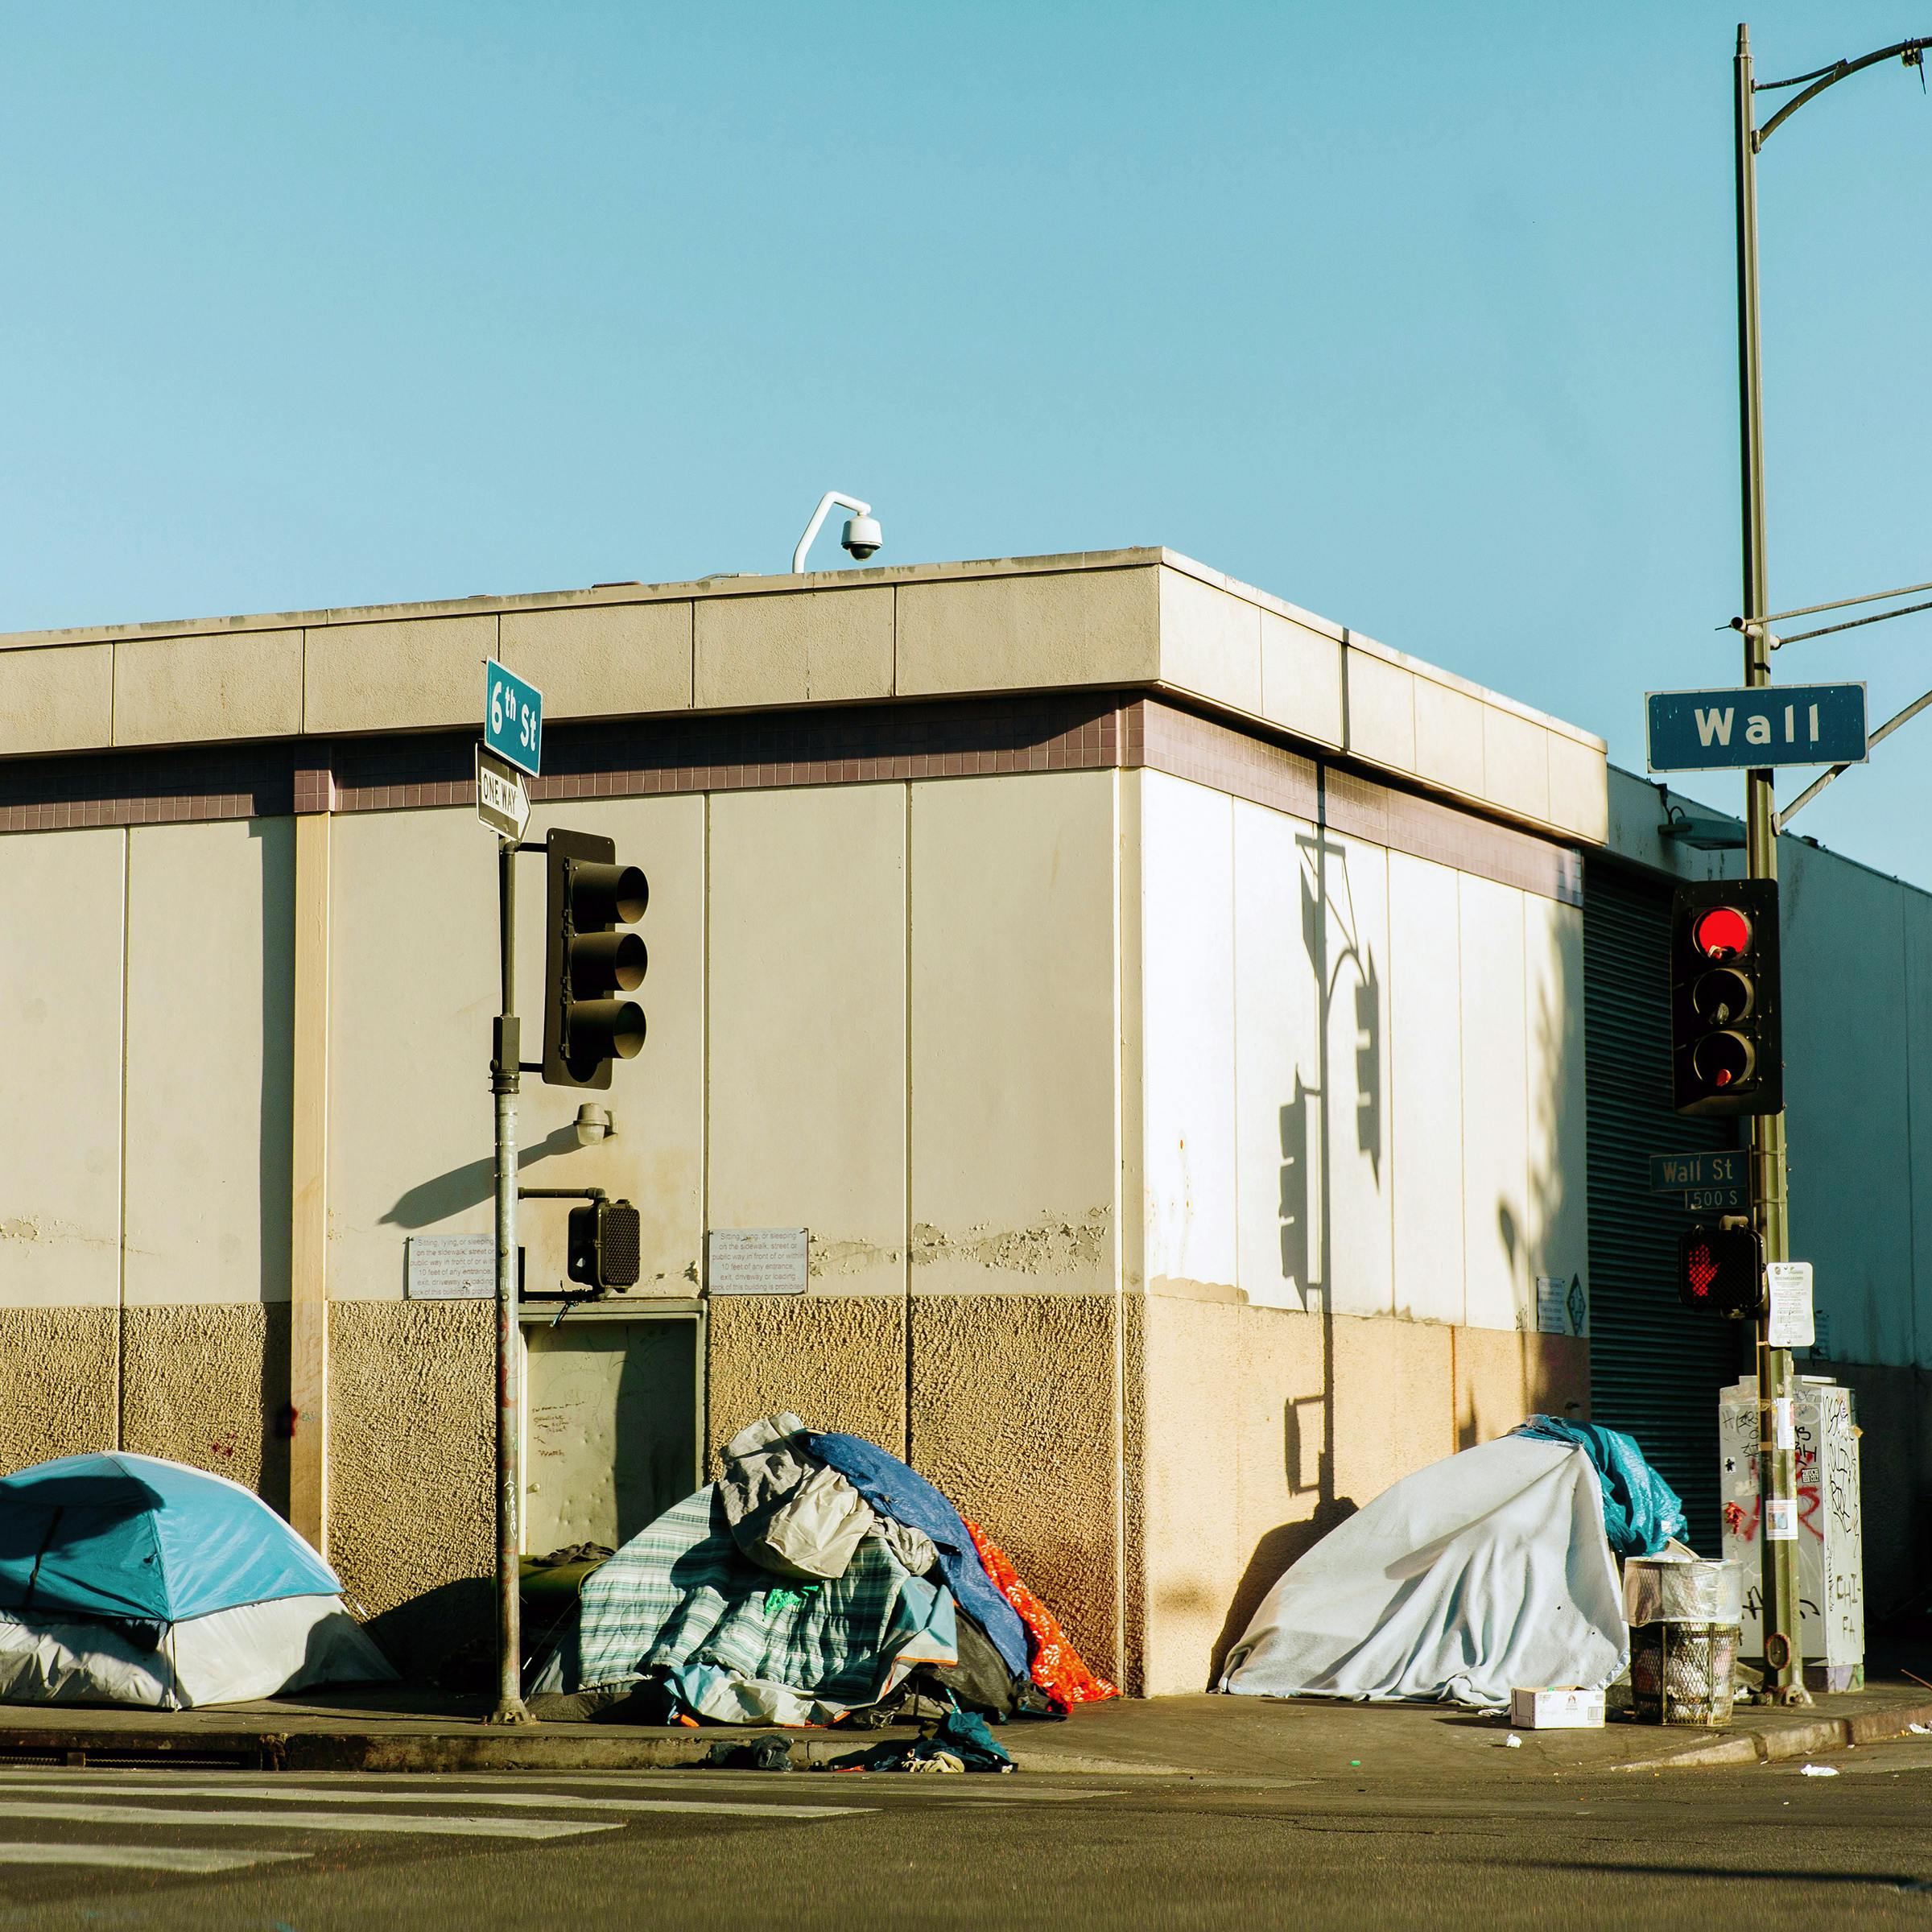 How Do You Solve a Problem Like Homelessness?